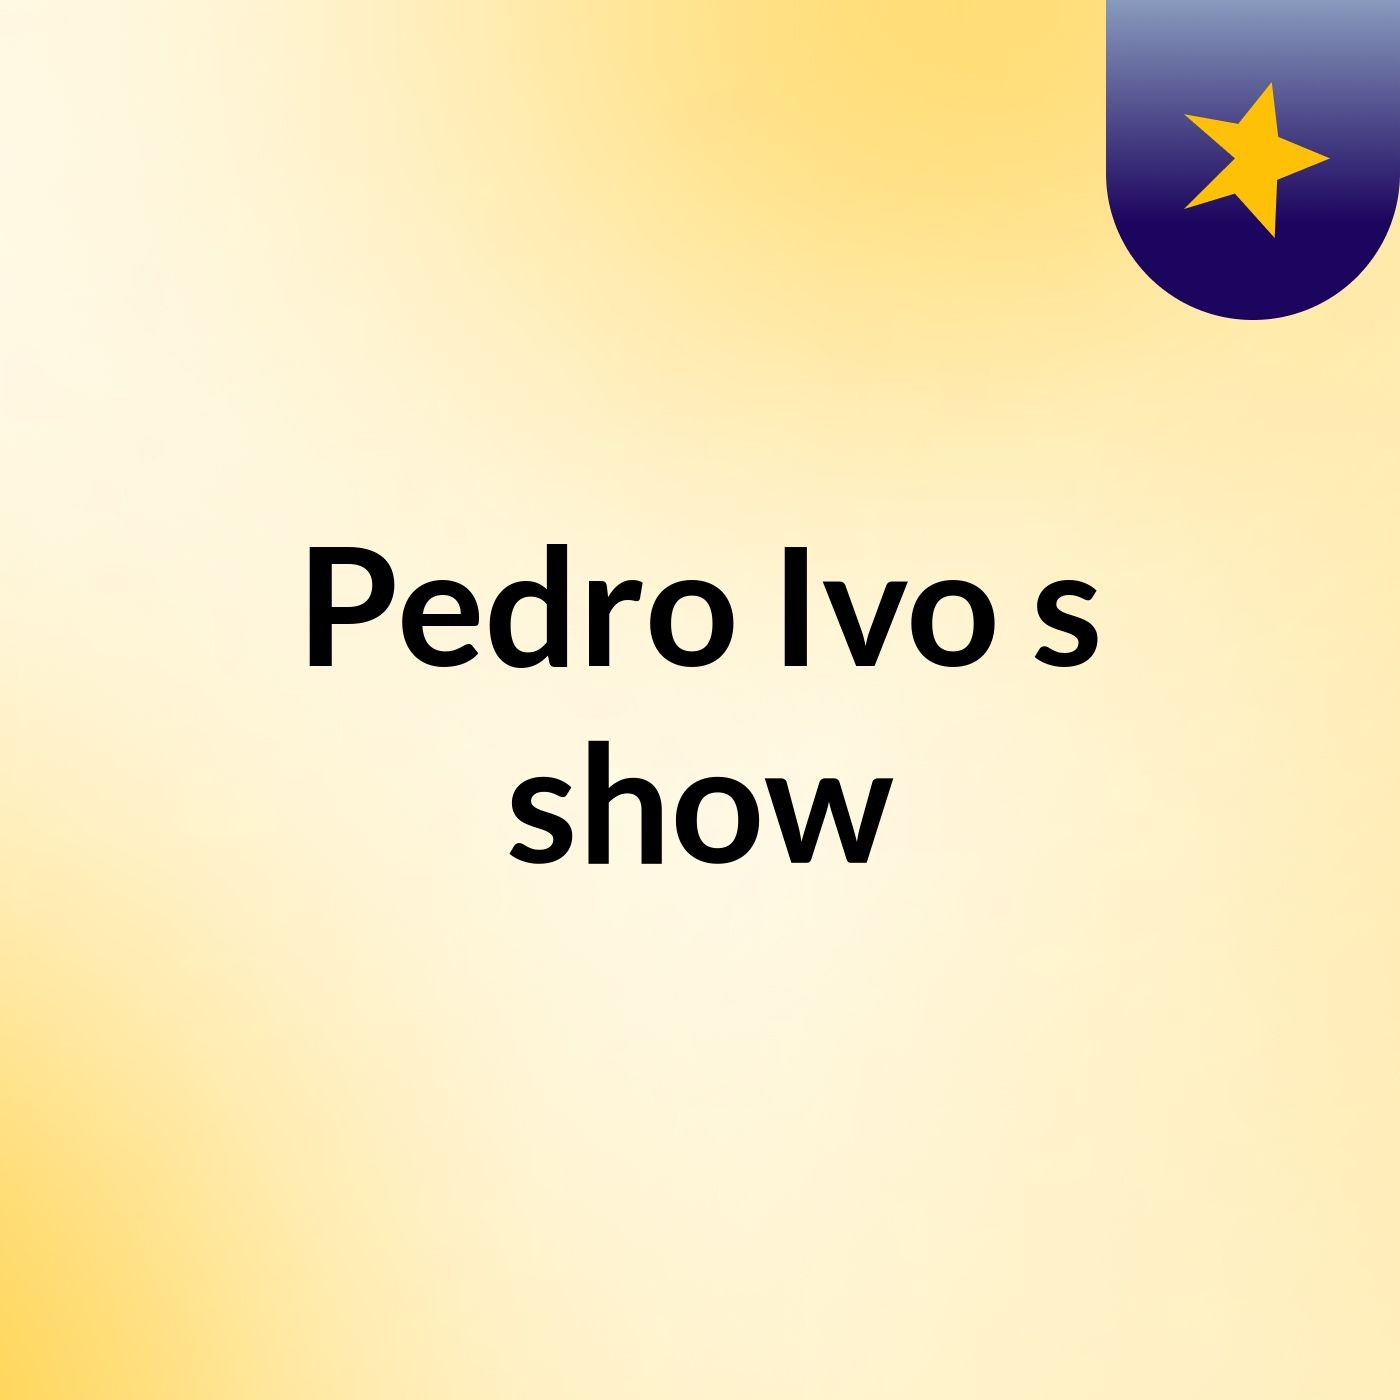 Pedro Ivo's show